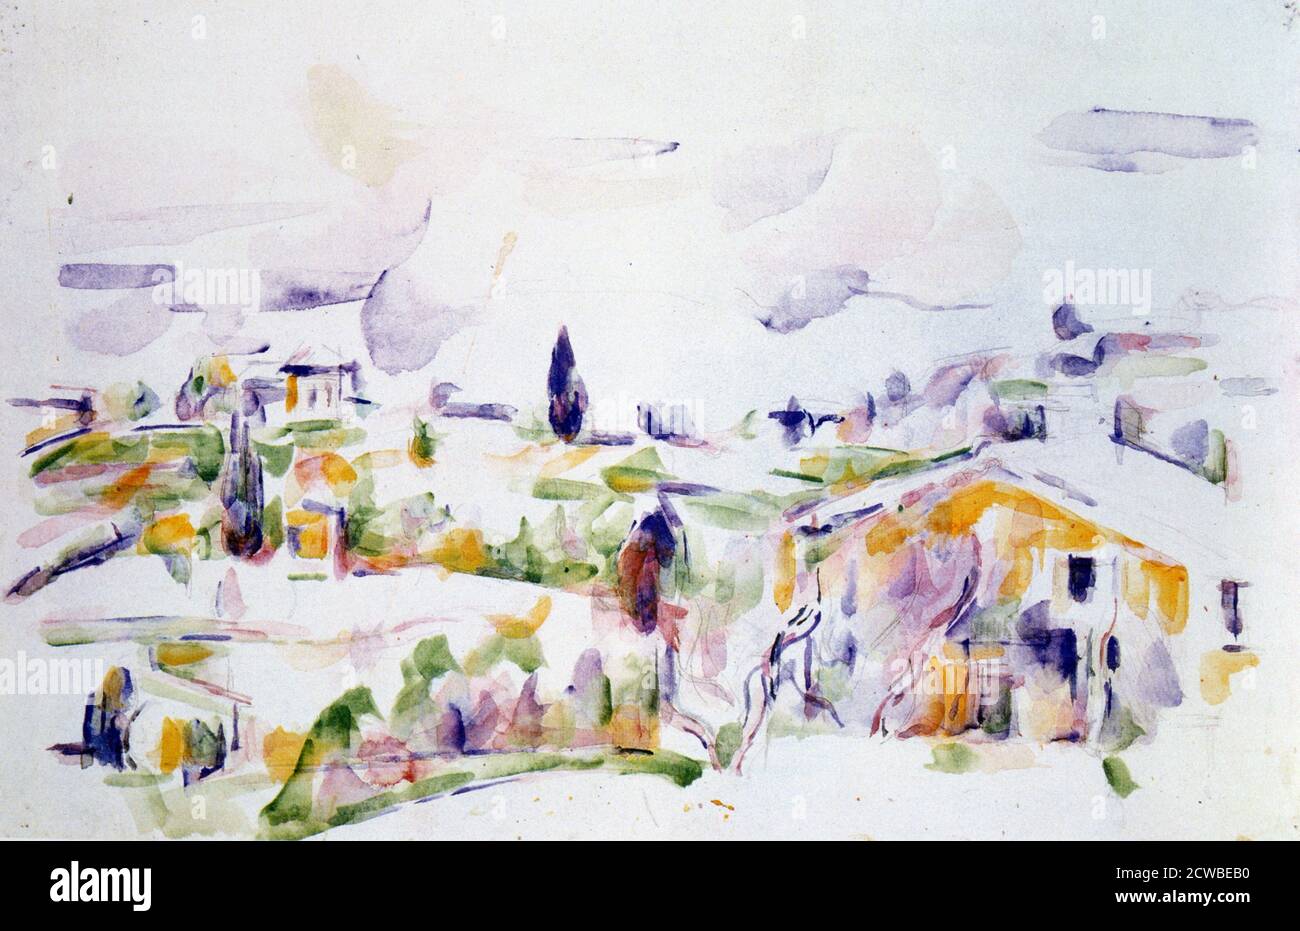 'Passage durch die Provence', c1900-1906 Künstler: Paul Cezanne. Cezanne (1839-1906) war ein französischer Künstler und Post-Impressionist Maler, dessen Arbeit legte den Grundstein für den Übergang von der 19. Jahrhundert impressionistischen Bewegung zu 20. Jahrhundert Stile wie Kubismus. Stockfoto